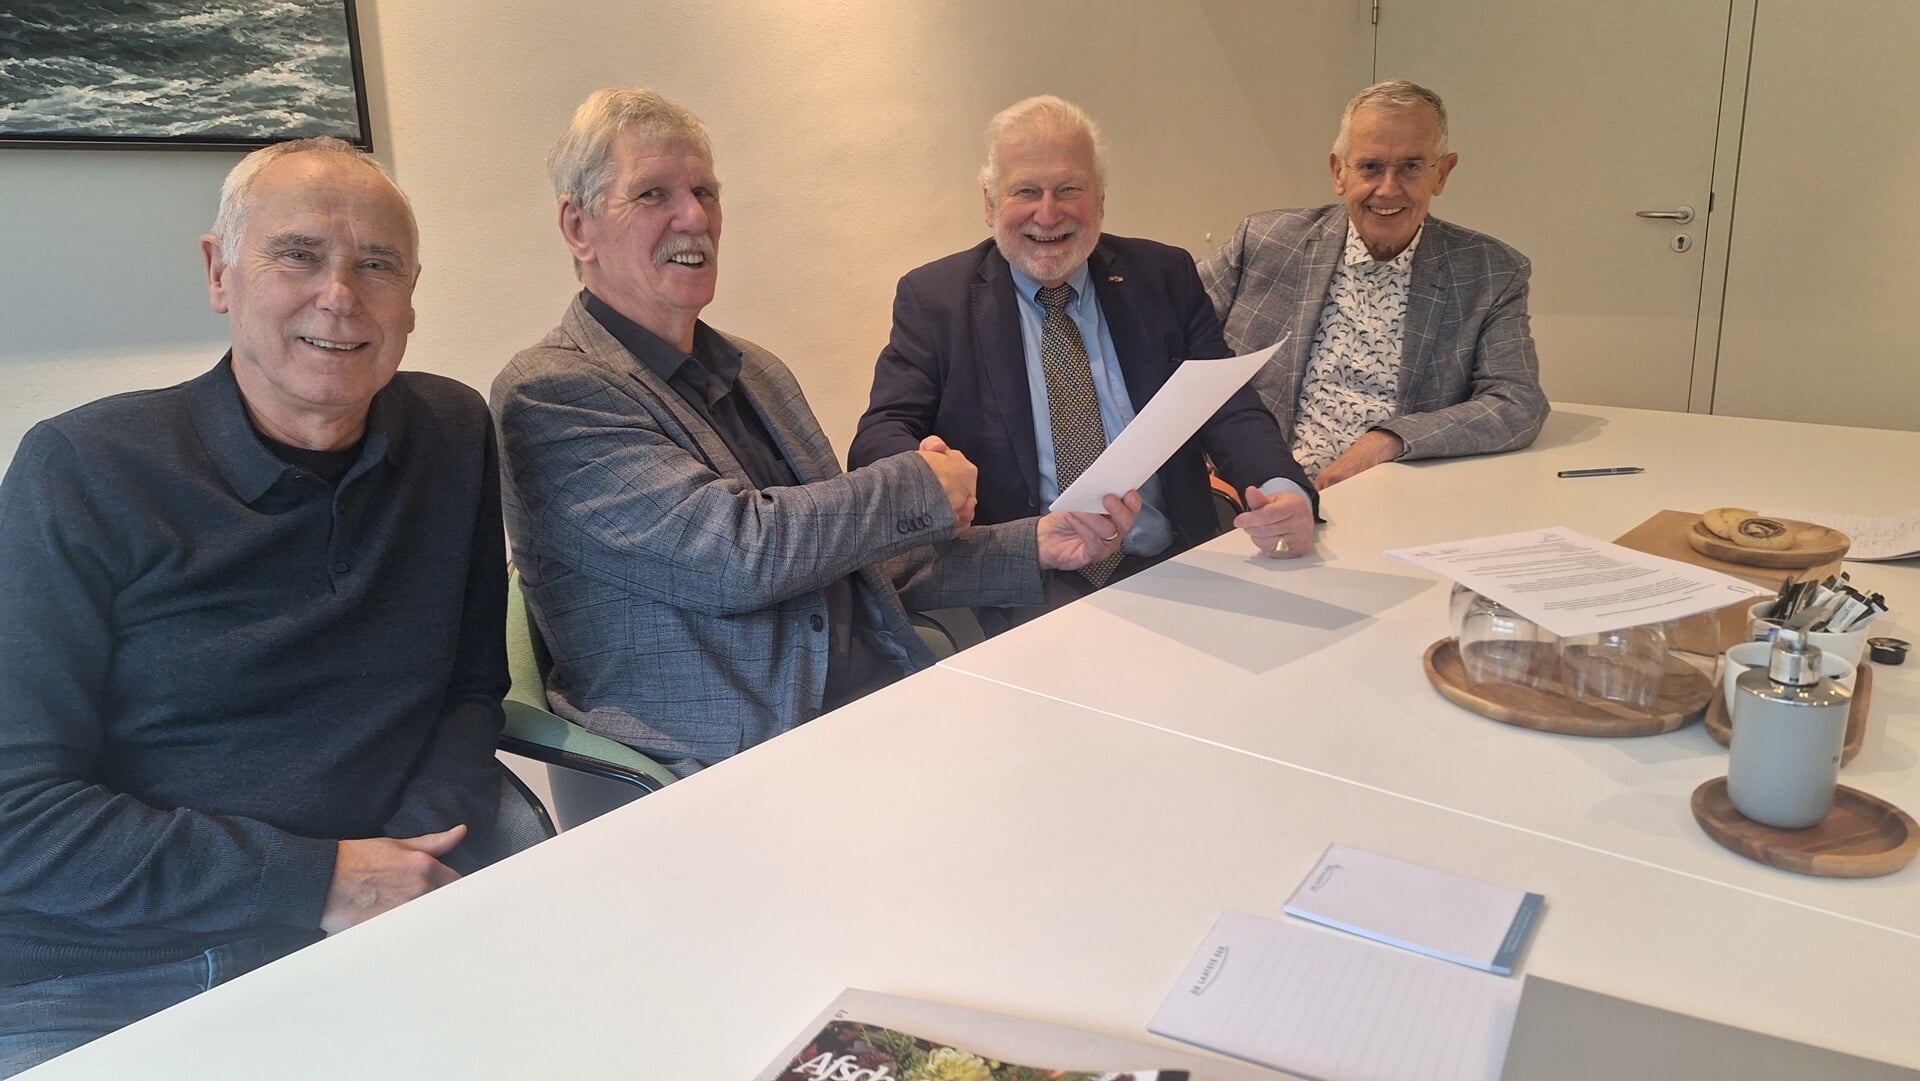 De contractondertekening met van links naar rechts: Kees van Velzen, Kees van der Kraan, Jan Vincenten en Bob van der Deijl.